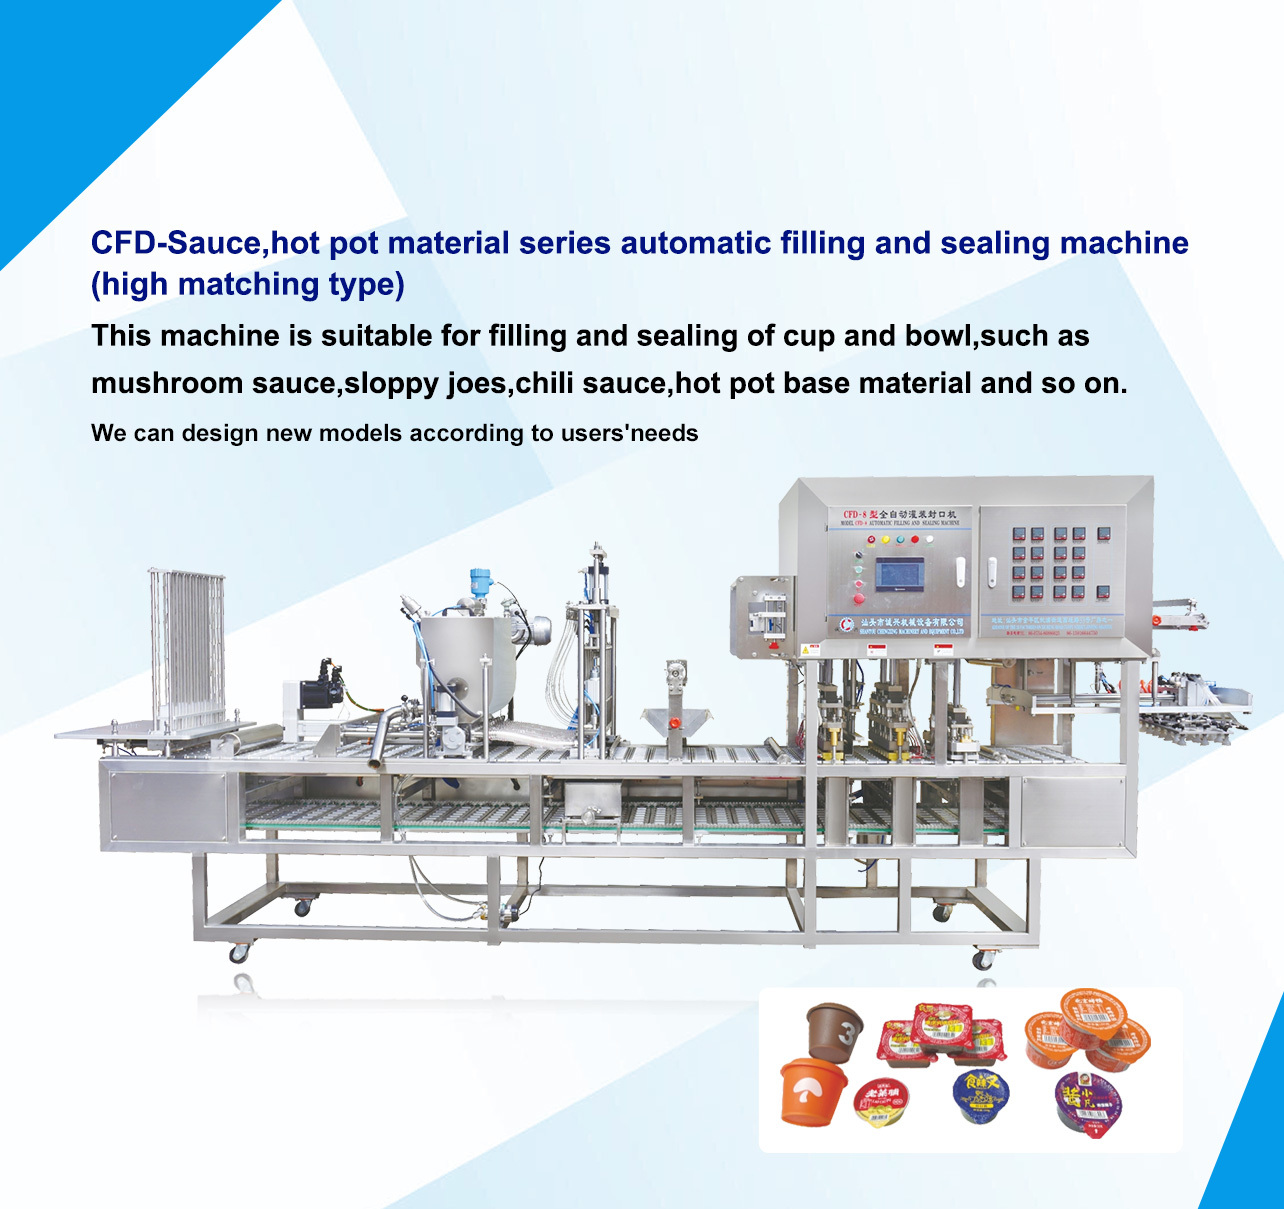 Shantou Chengxing Machinery Equipment Co., Ltd